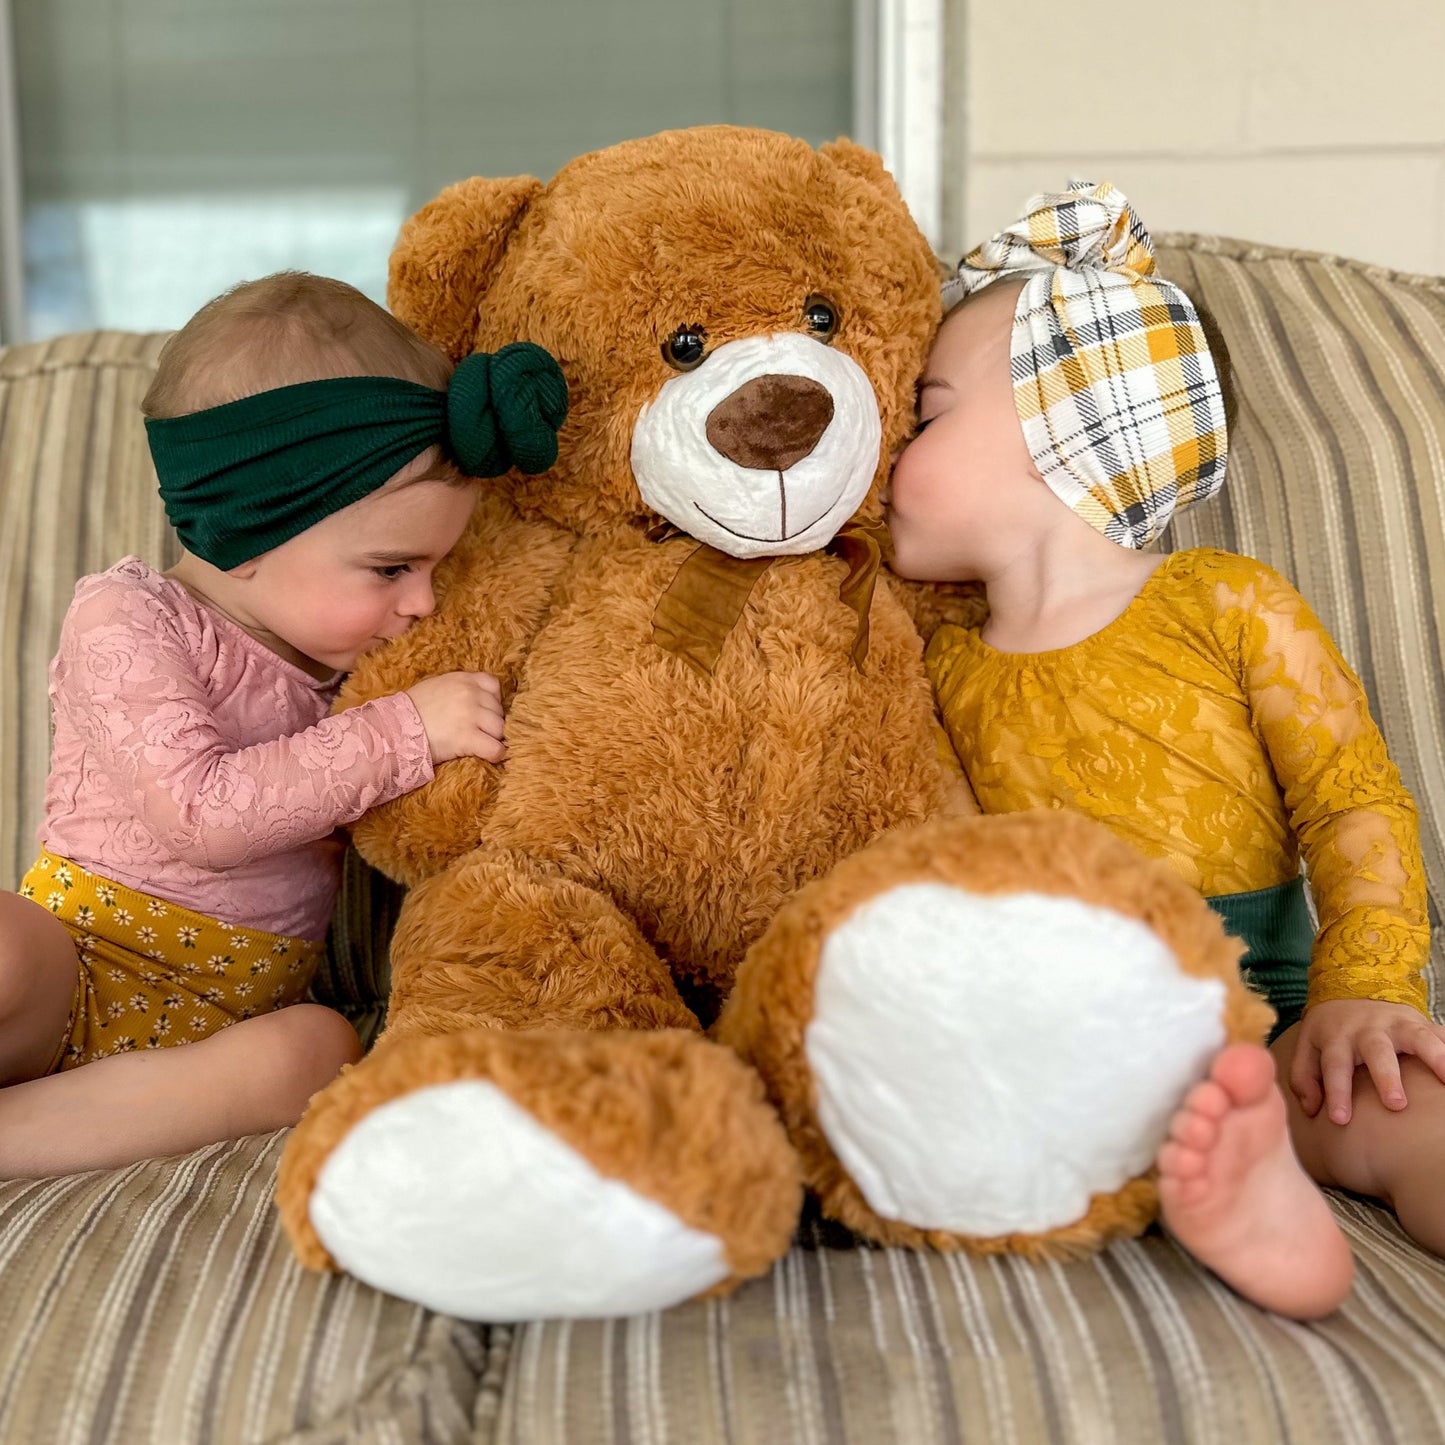 Giant Teddy Bear Plush Toy, Dark Brown, 35.4/51 Inches - MorisMos Plush Toys